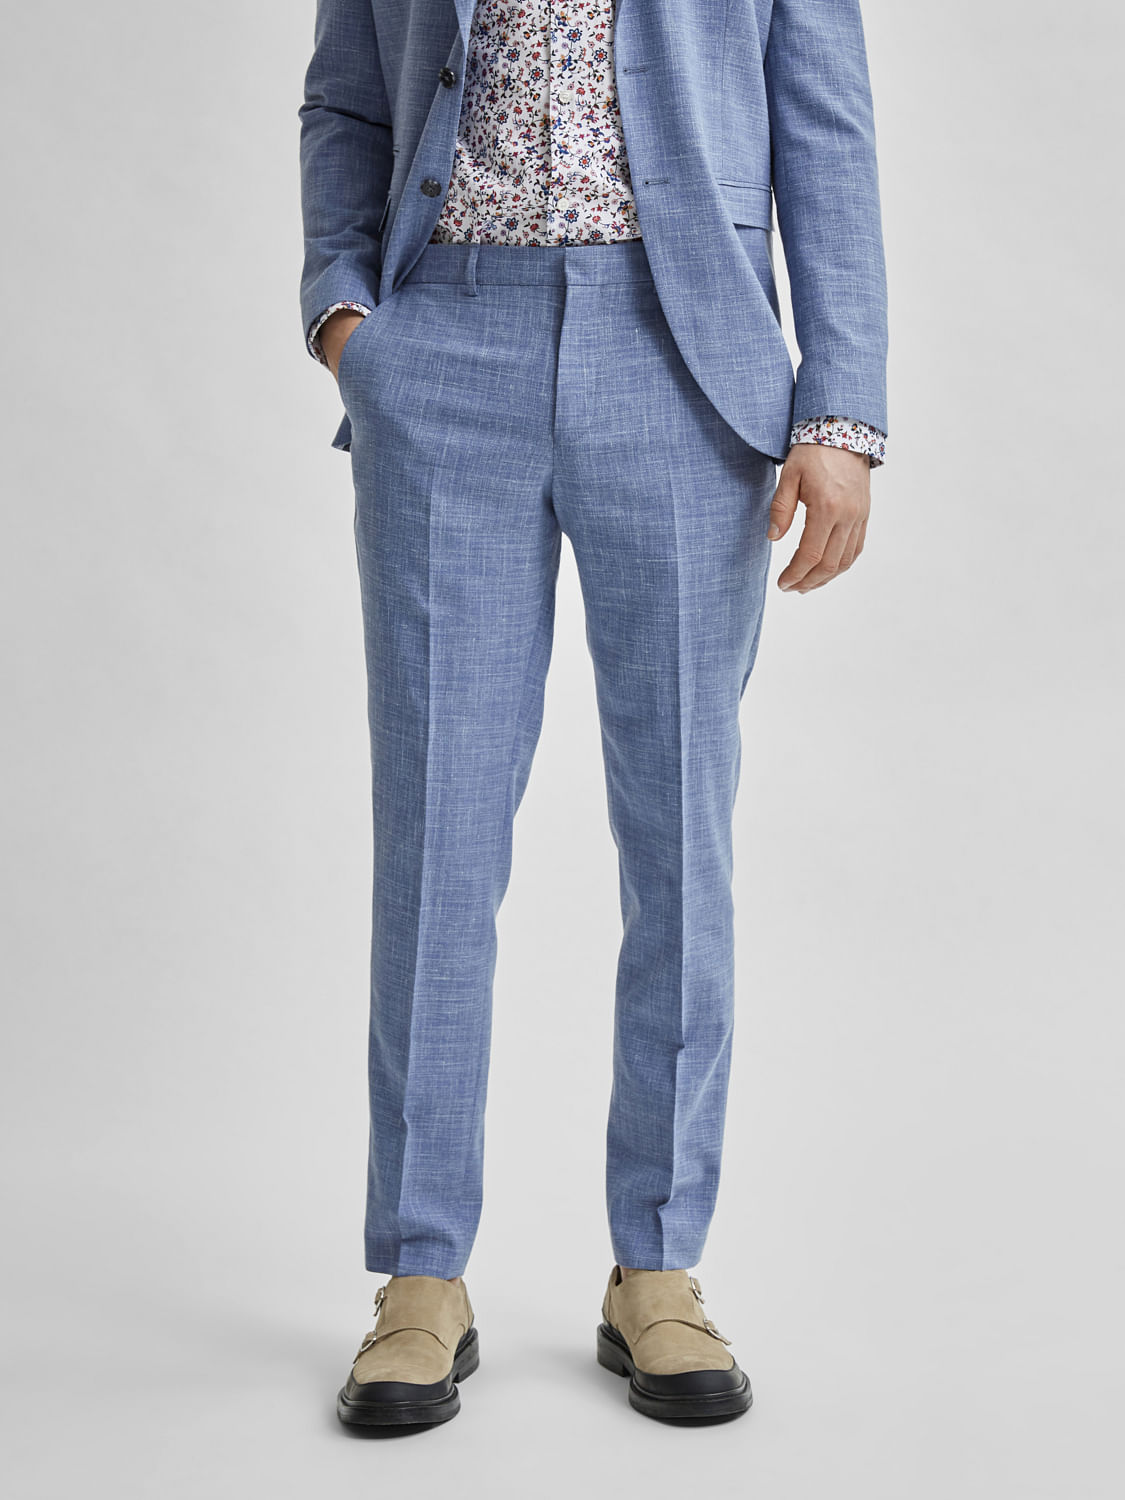 Checked suit trousers | GutteridgeUS | Men's catalog-gutteridge-storefront